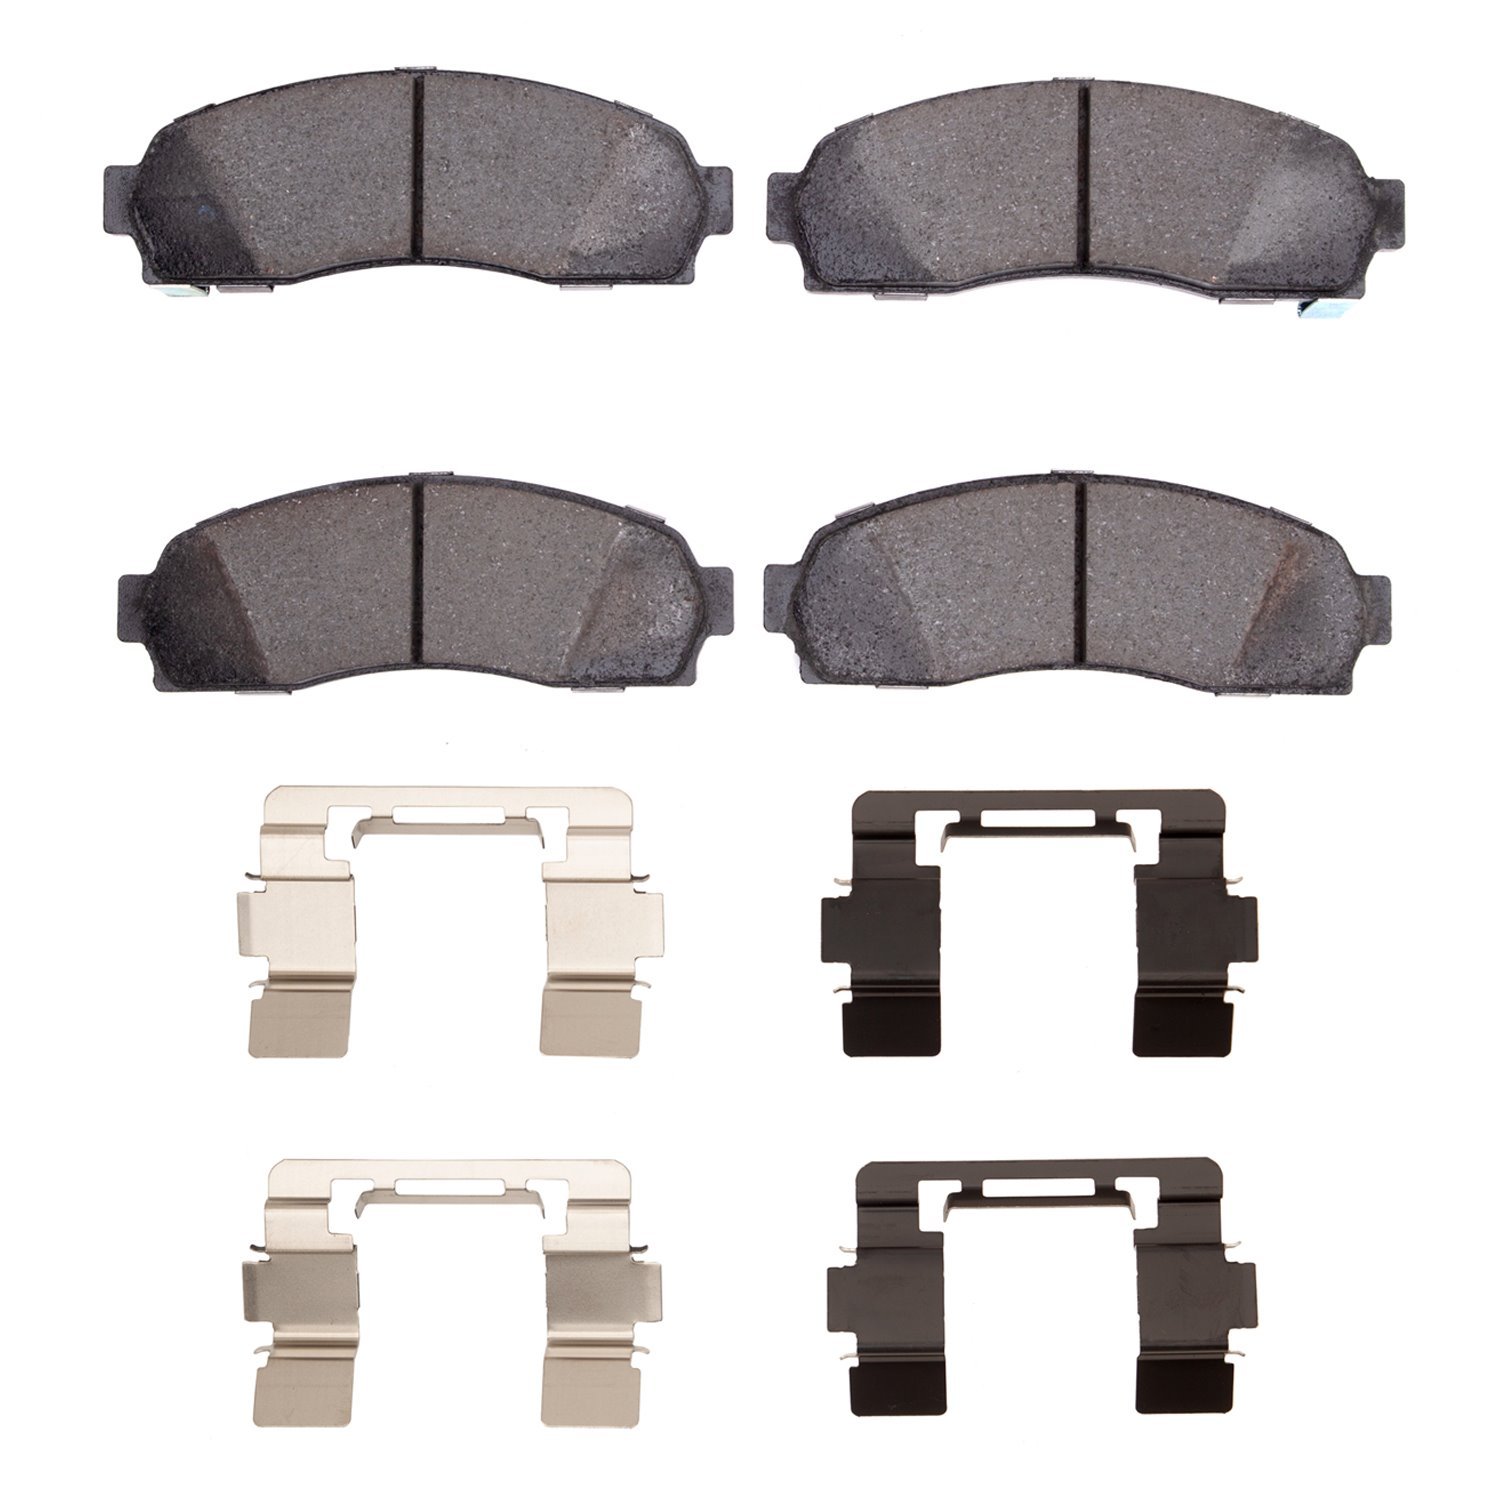 Ceramic Brake Pads & Hardware Kit, 2002-2012 Fits Multiple Makes/Models, Position: Front